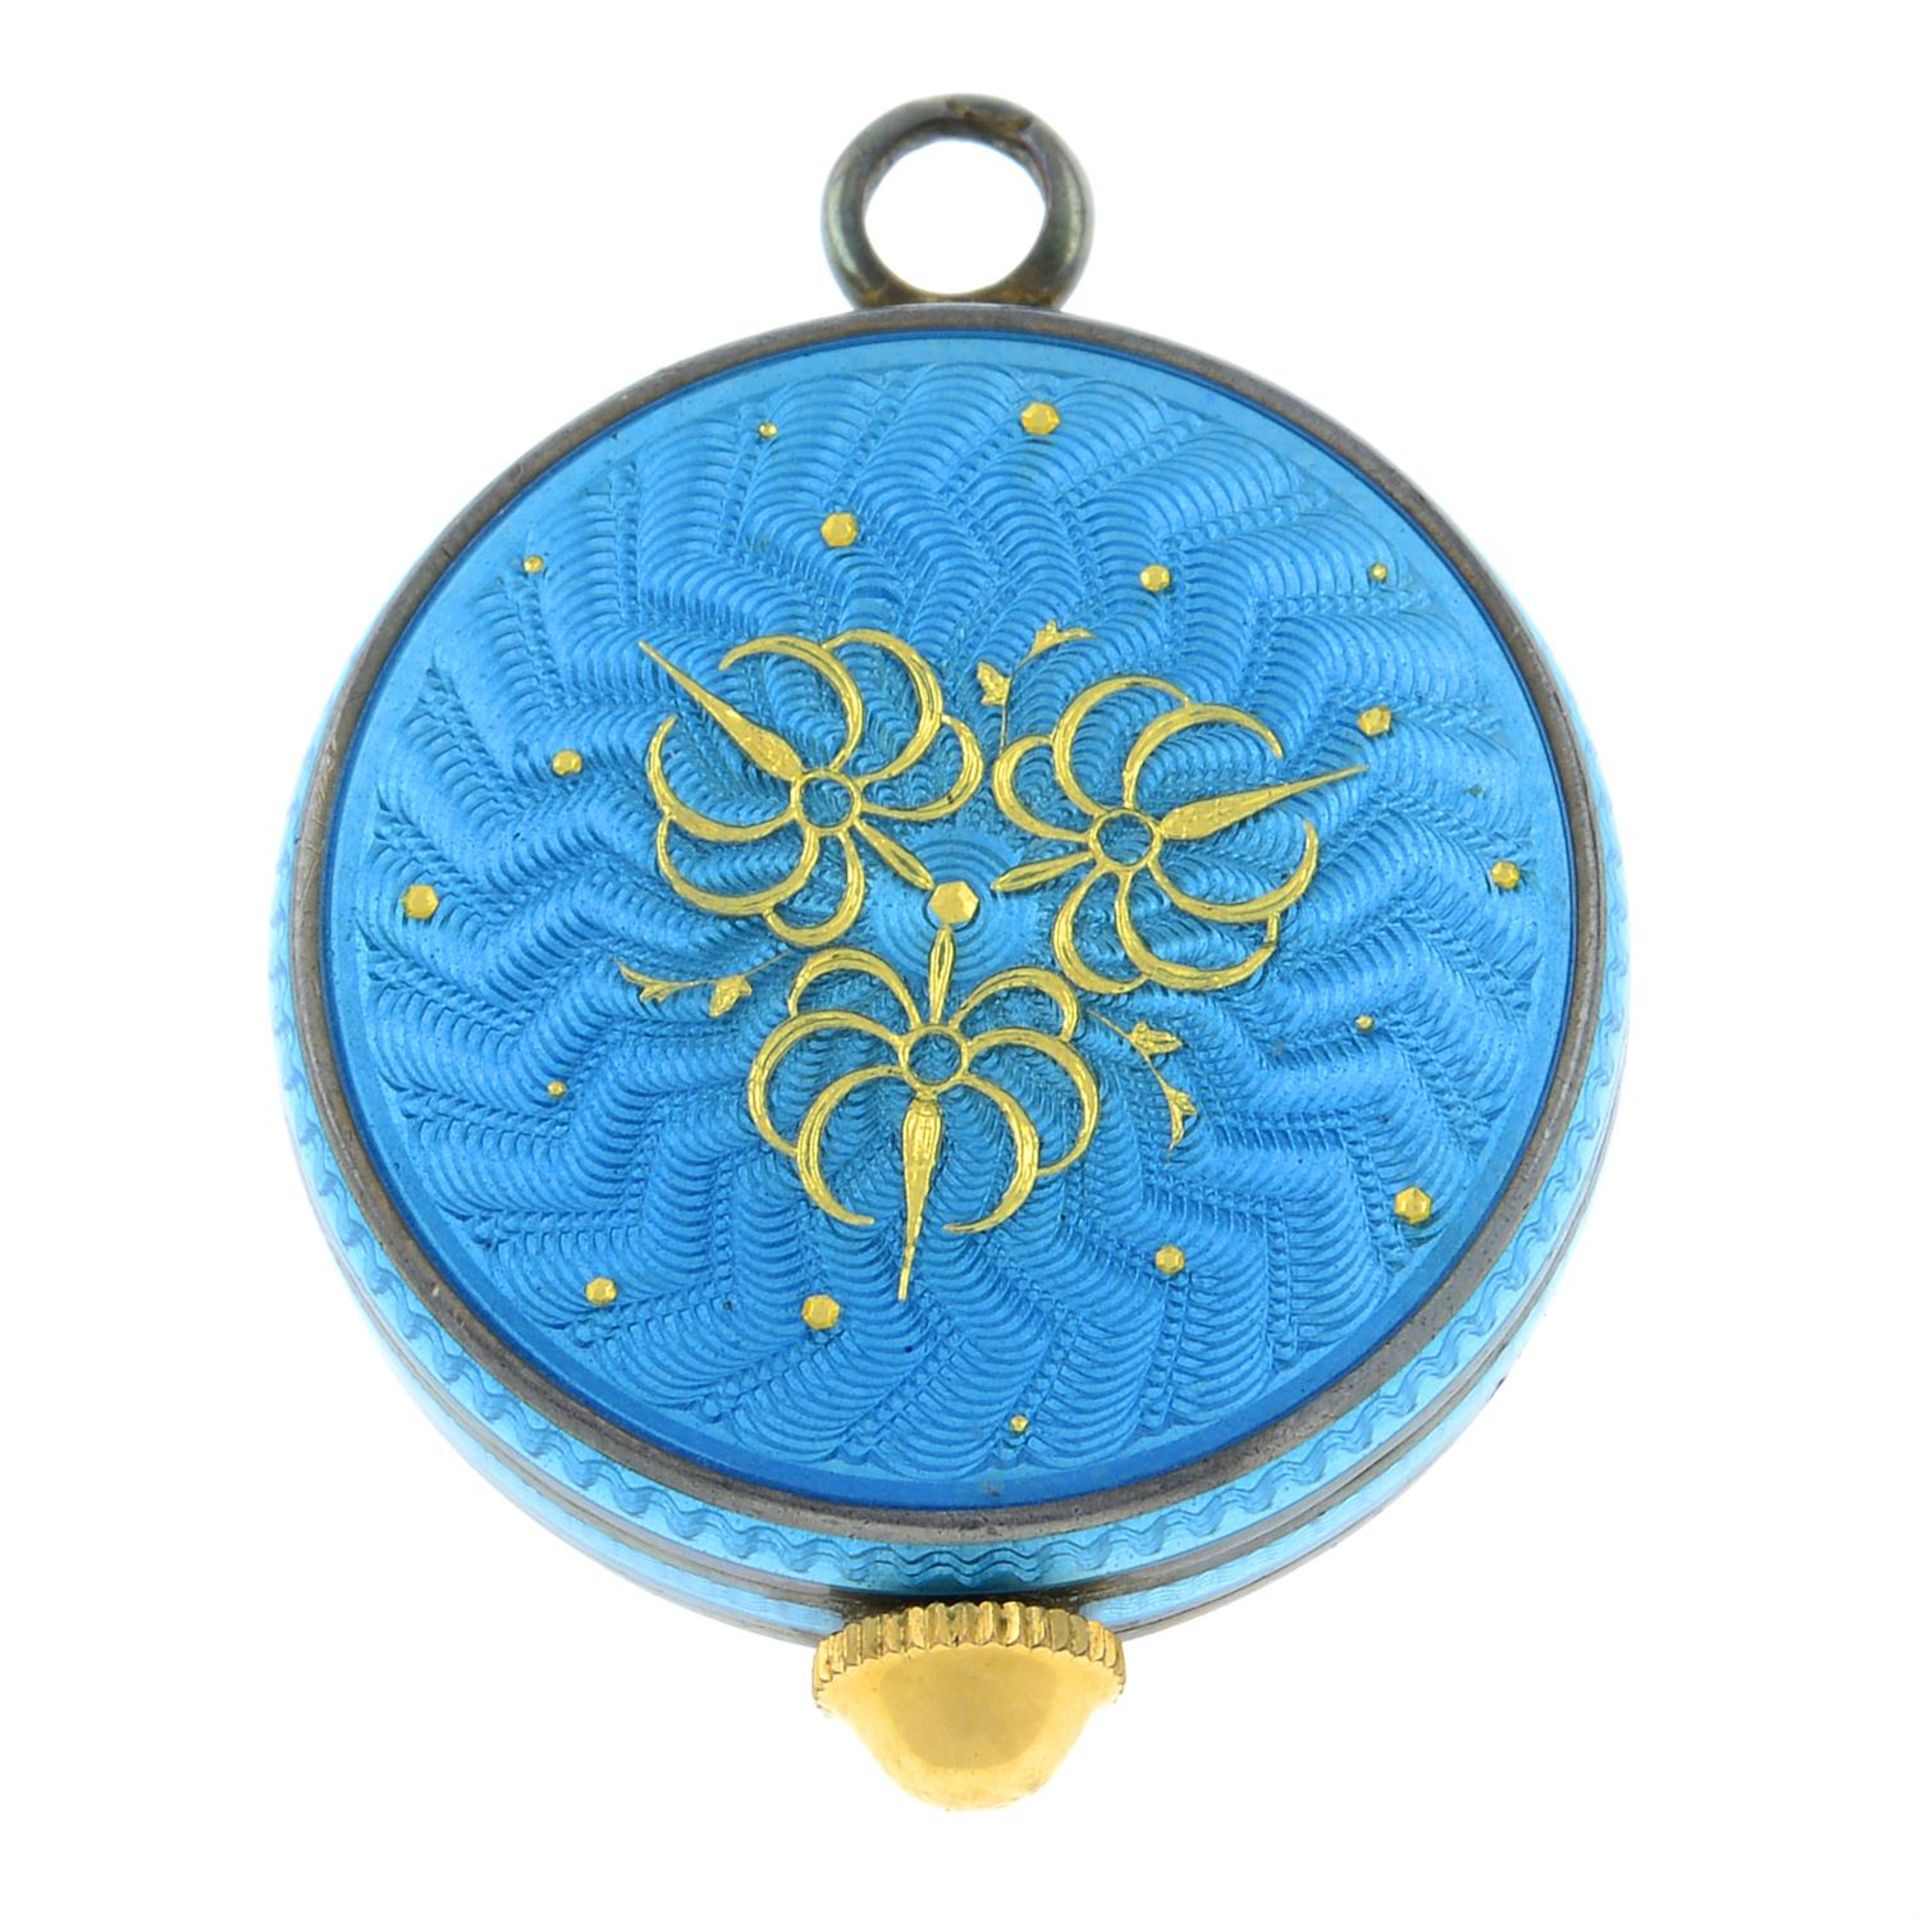 A blue guilloche enamel watch pendant, by Bucherer. - Image 2 of 2